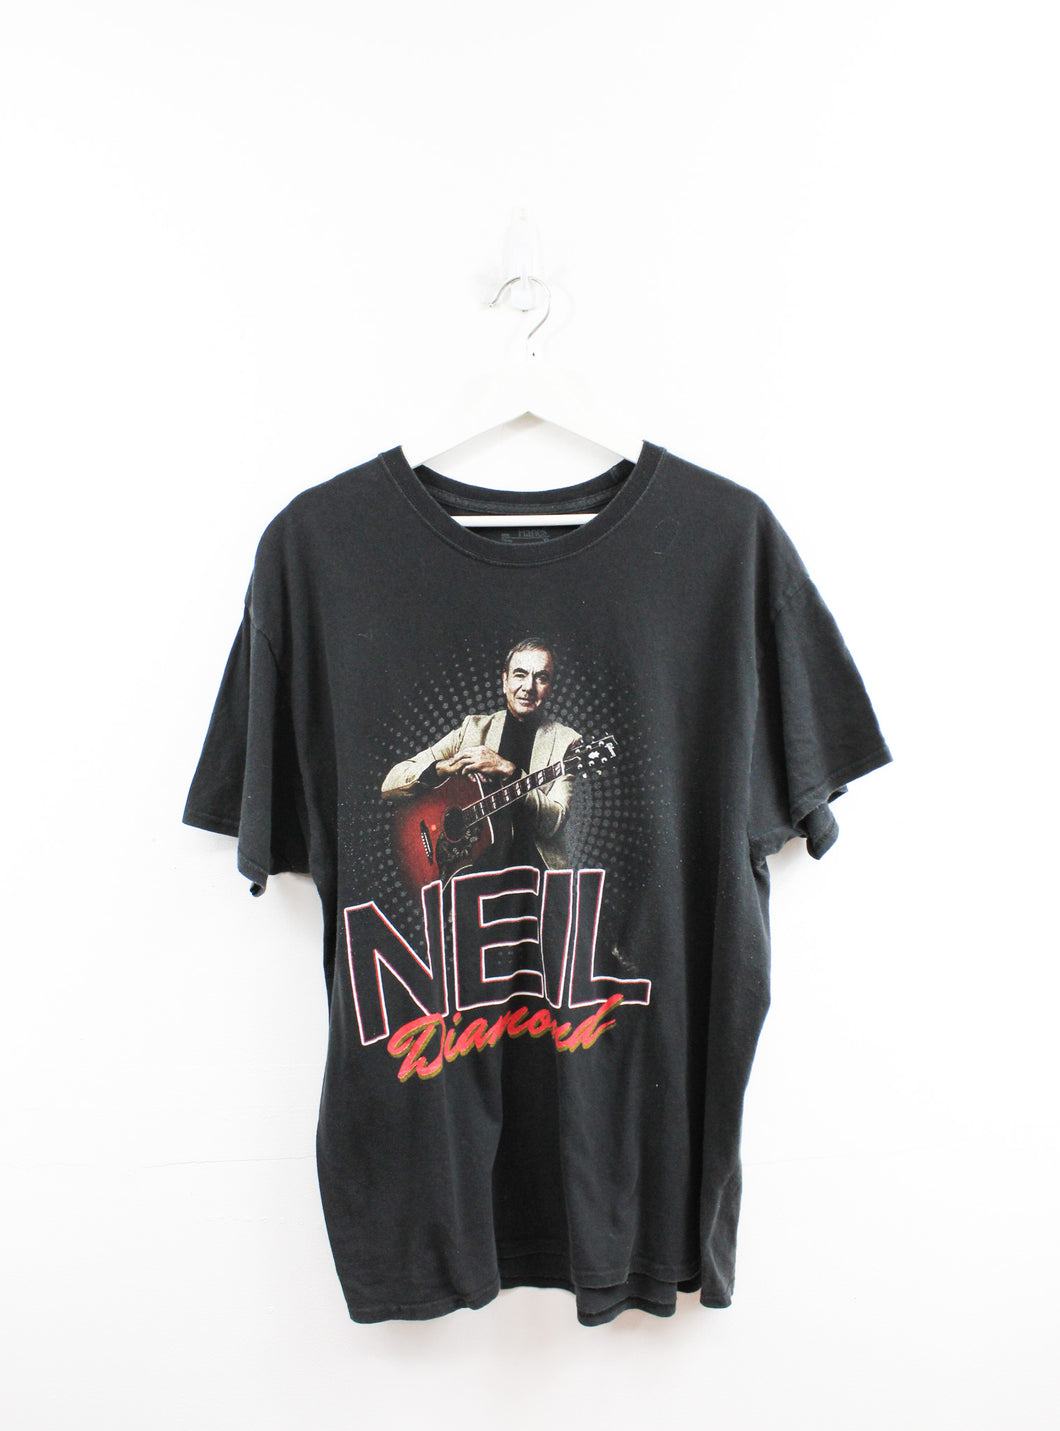 Neil Diamond 2012 Tour Picture Tee